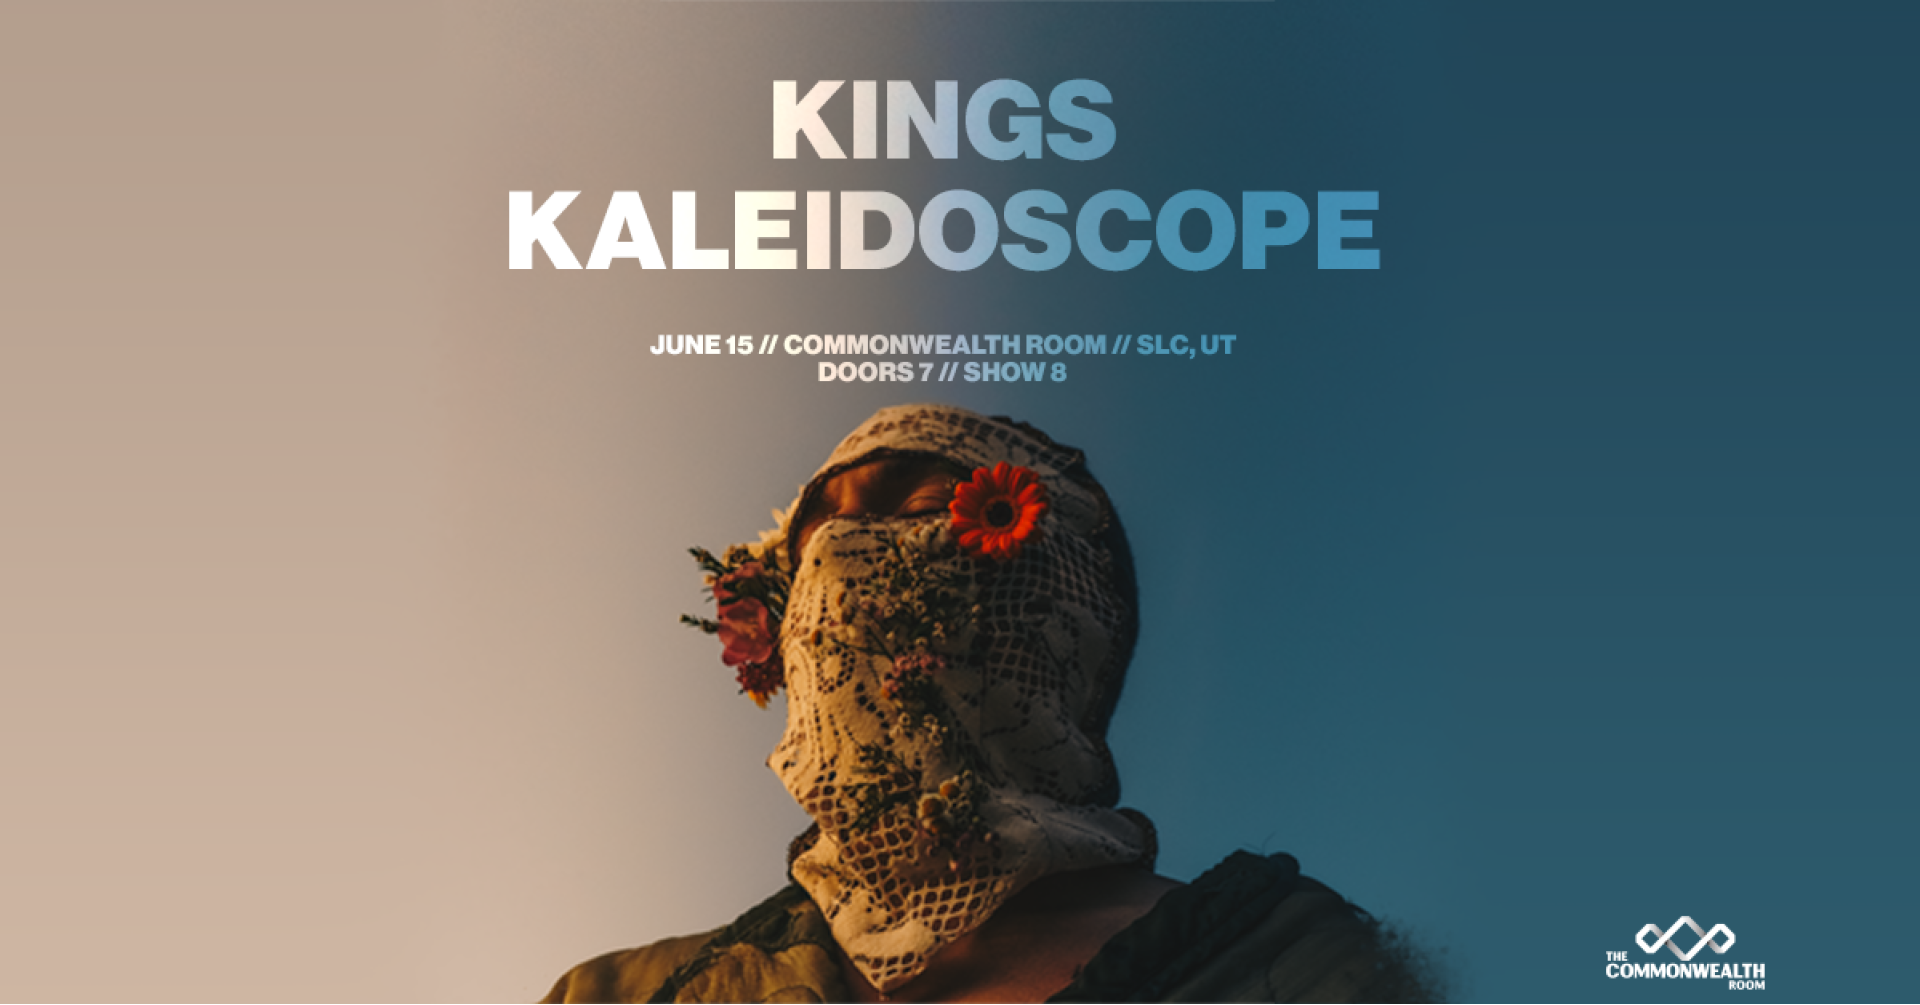 Kings Kaleidoscope